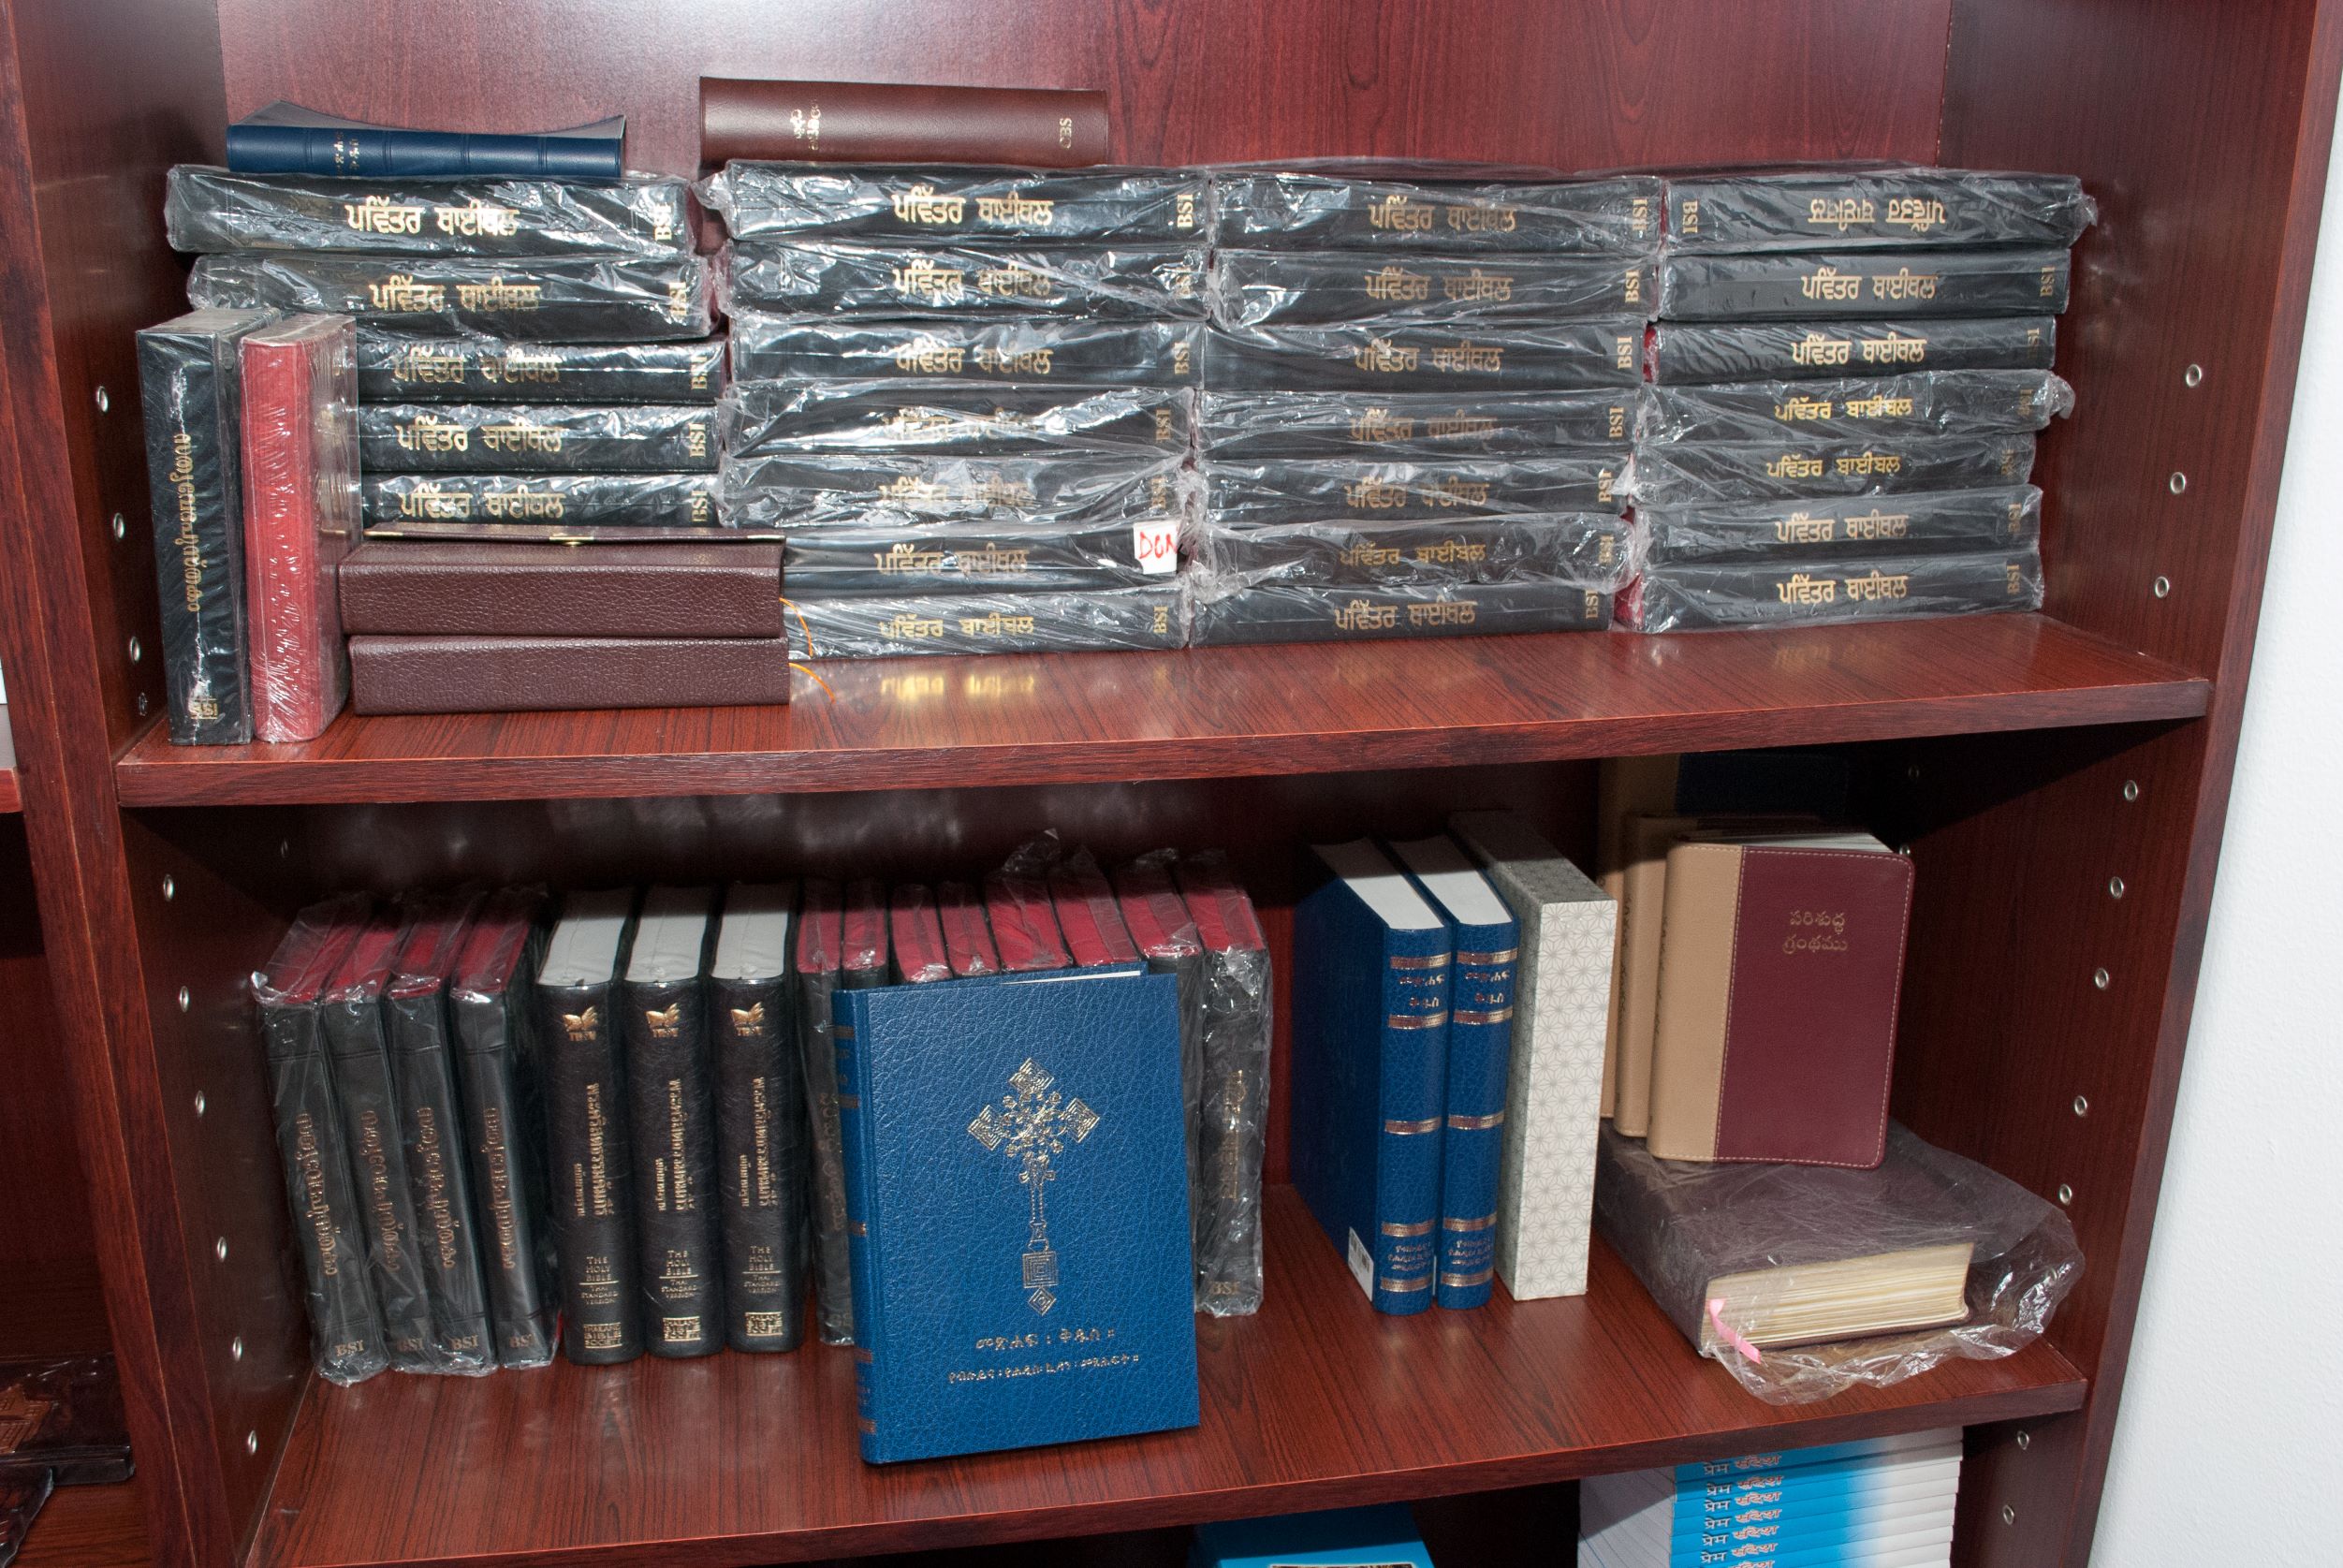 Bijbels voor arbeidsmigranten in Bahrein